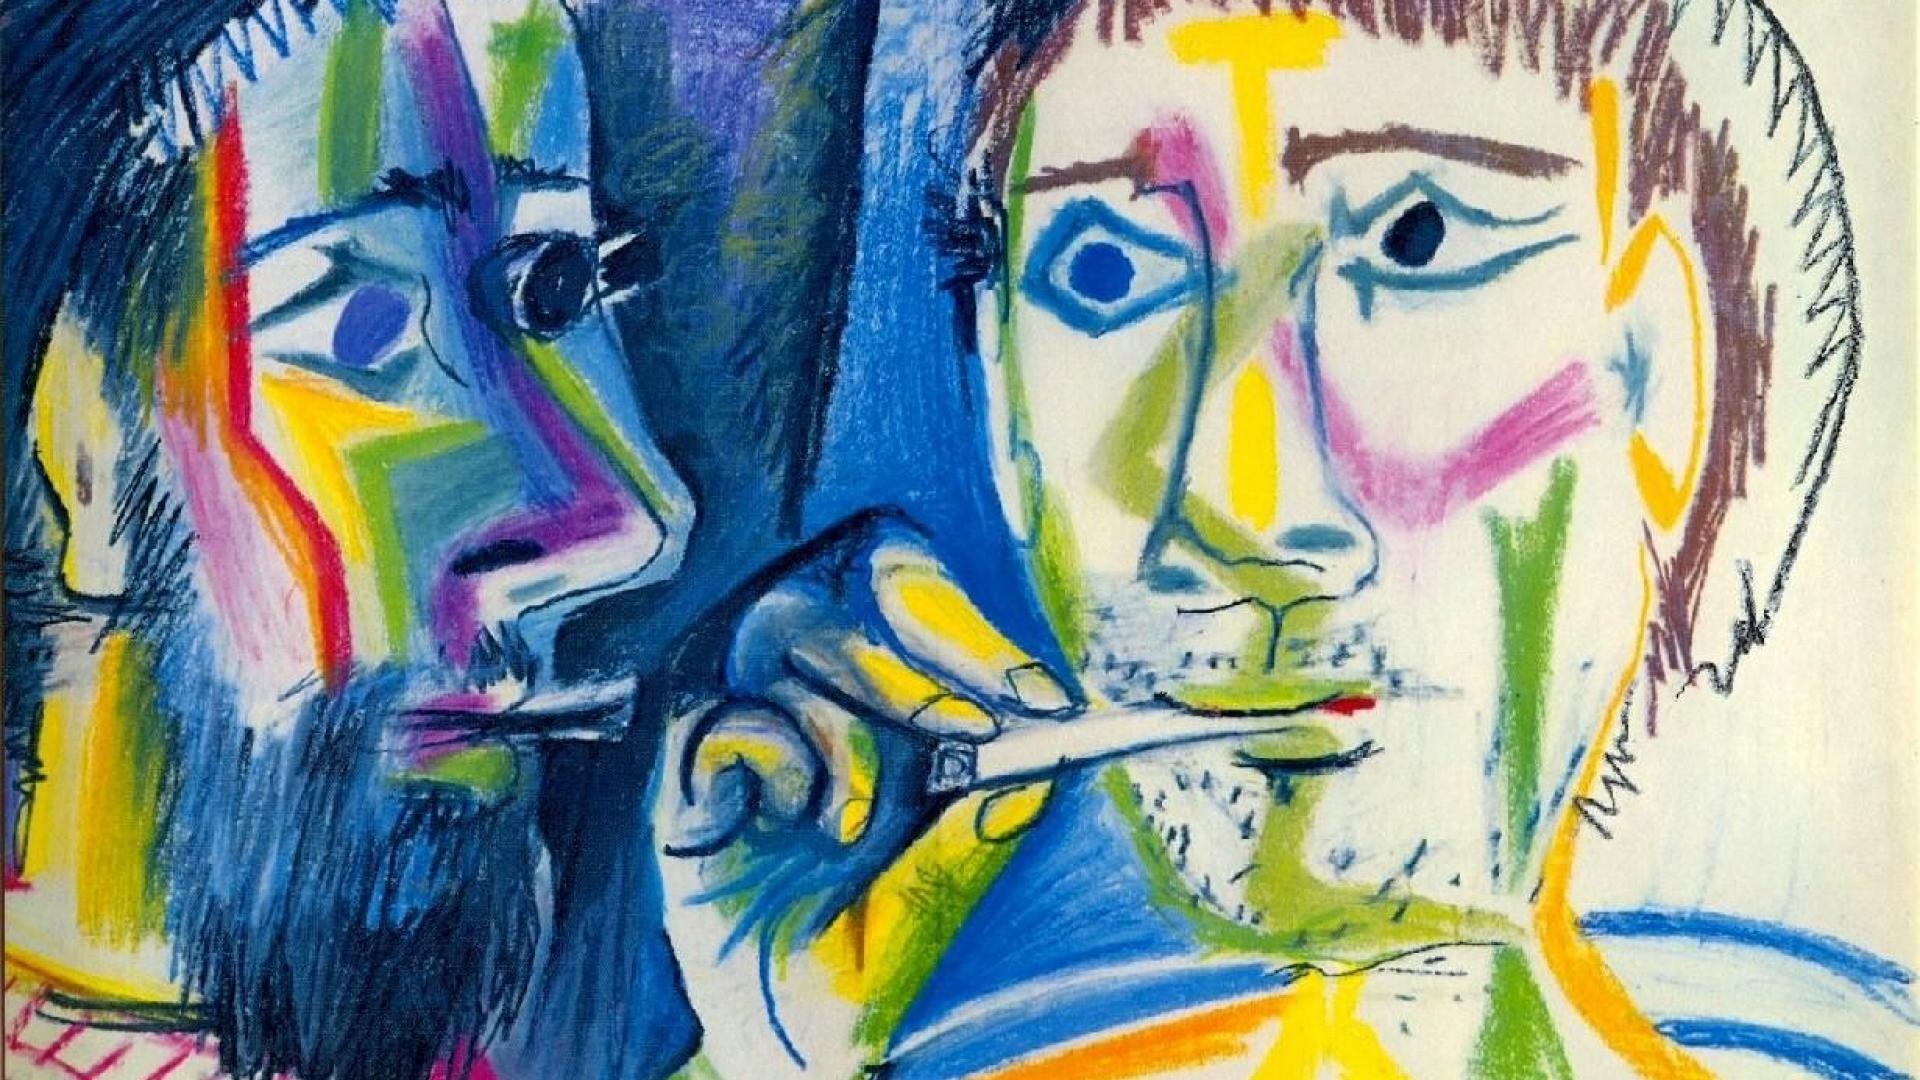 از نقاشی های پیکاسو از دو چهره مرد که یکی سیگار میکشد